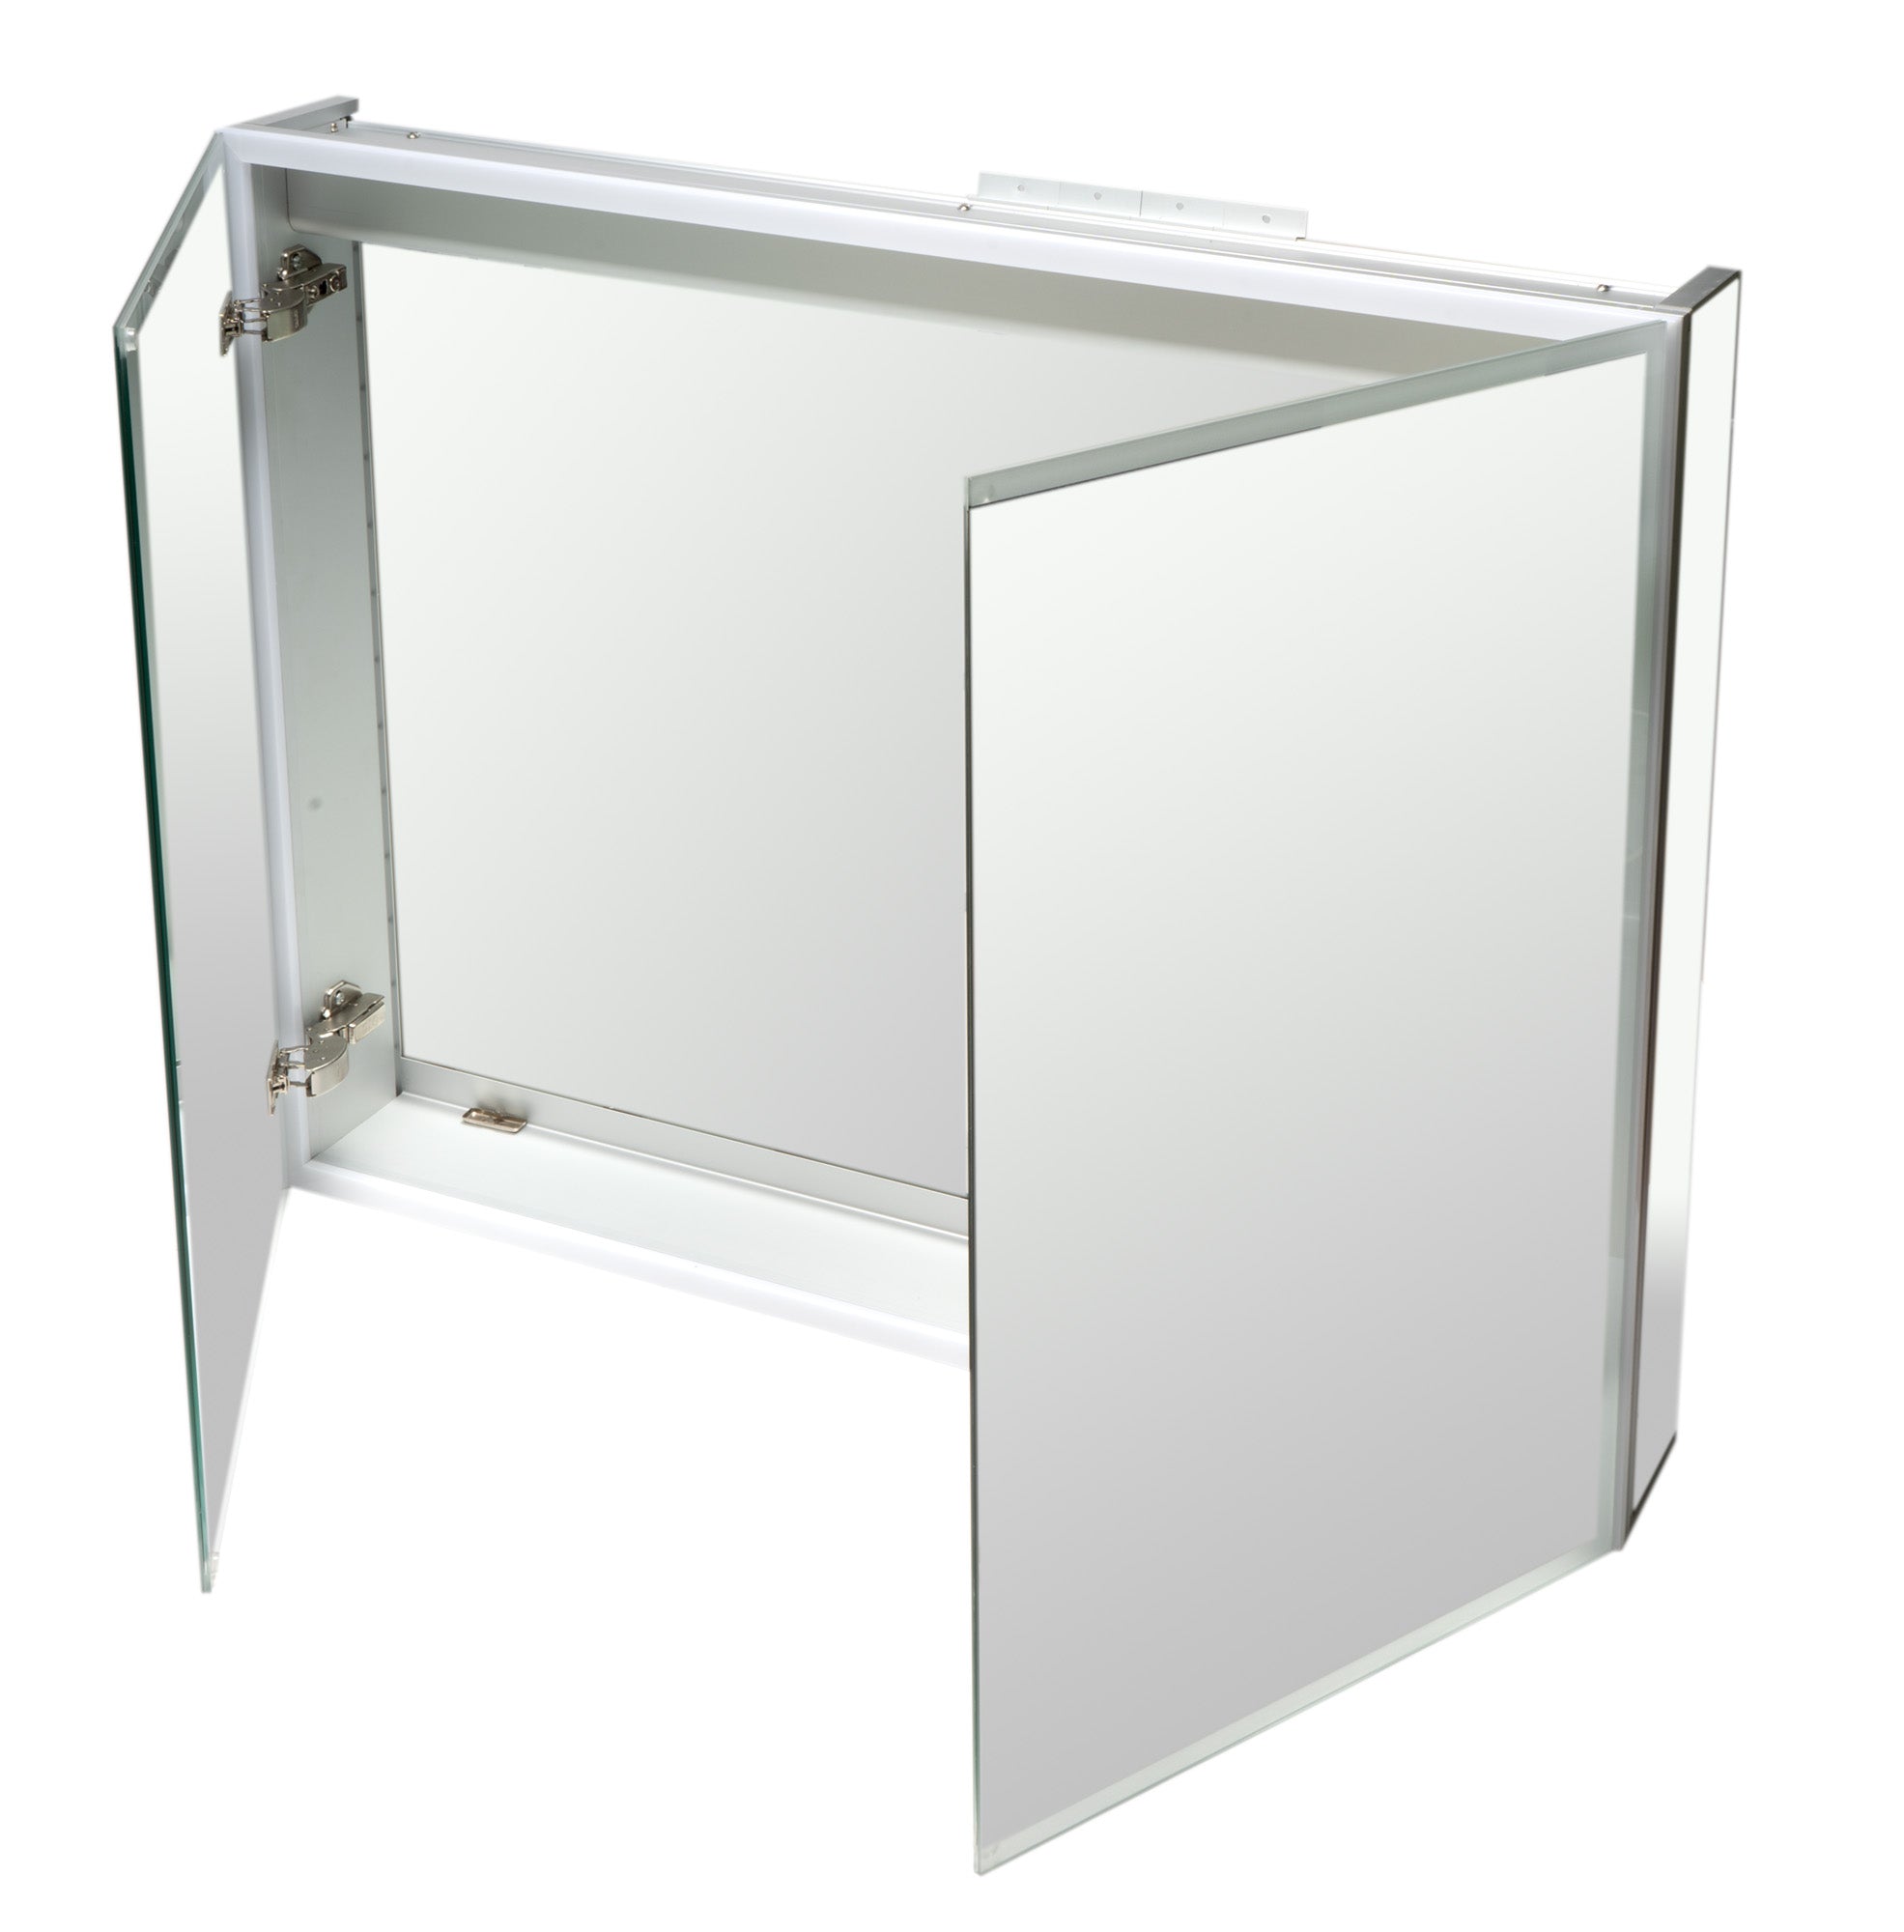 Alfi ABMC3630 36" x 30" Double Door LED Light Medicine Cabinet